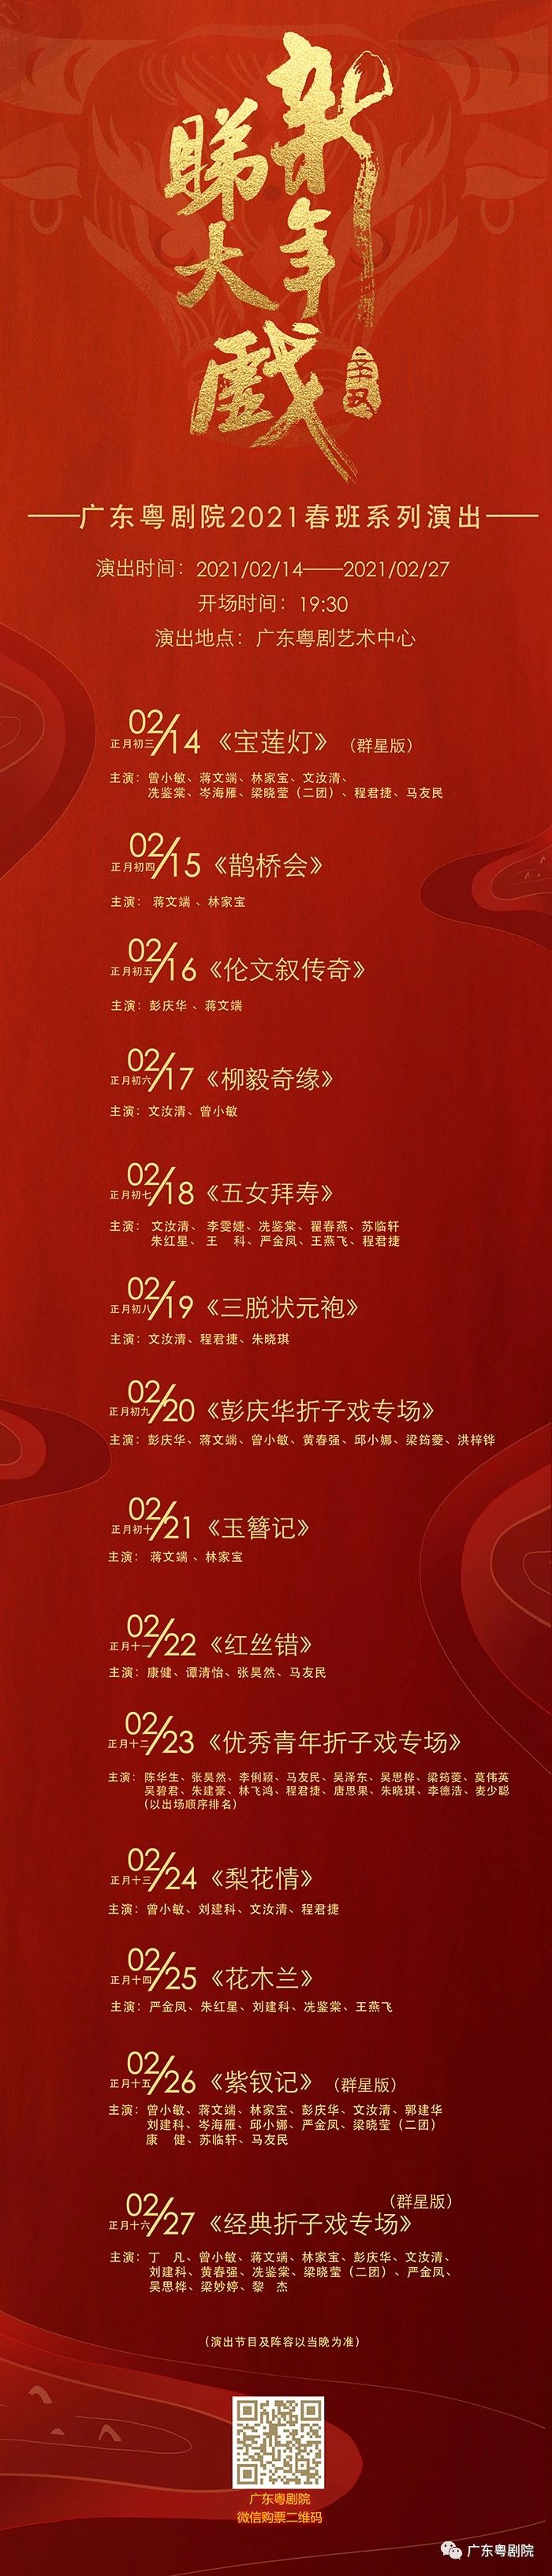 广东粤剧院2021春班系列演出安排